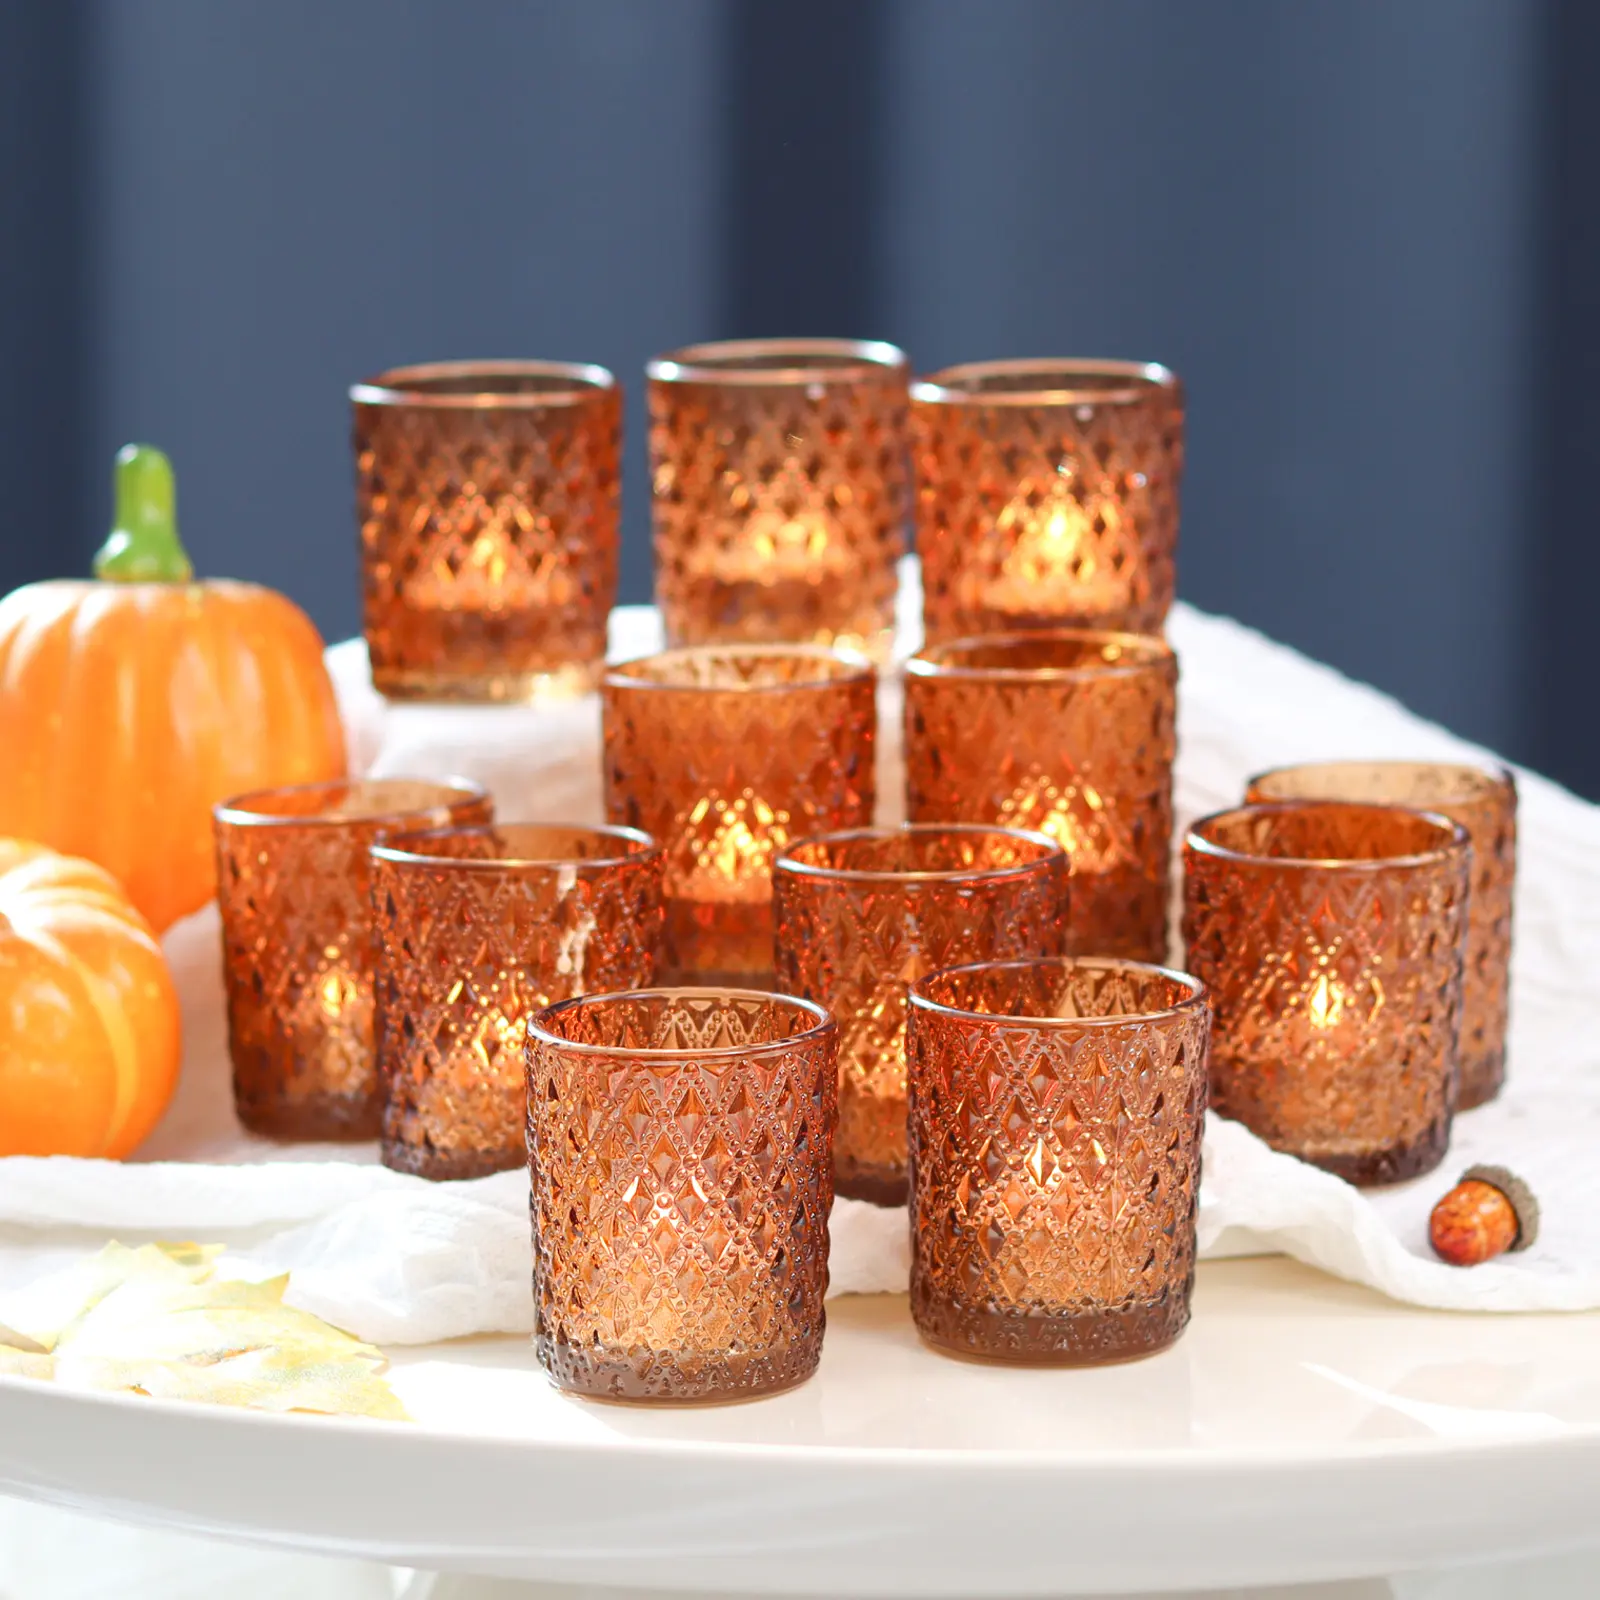 12 قطعة برطمان شمع من زجاج الكهرمان بألوان مخصصة وحامل شموع لأضواء الشاي لتزيين ديكور المائدة وعيد الميلاد